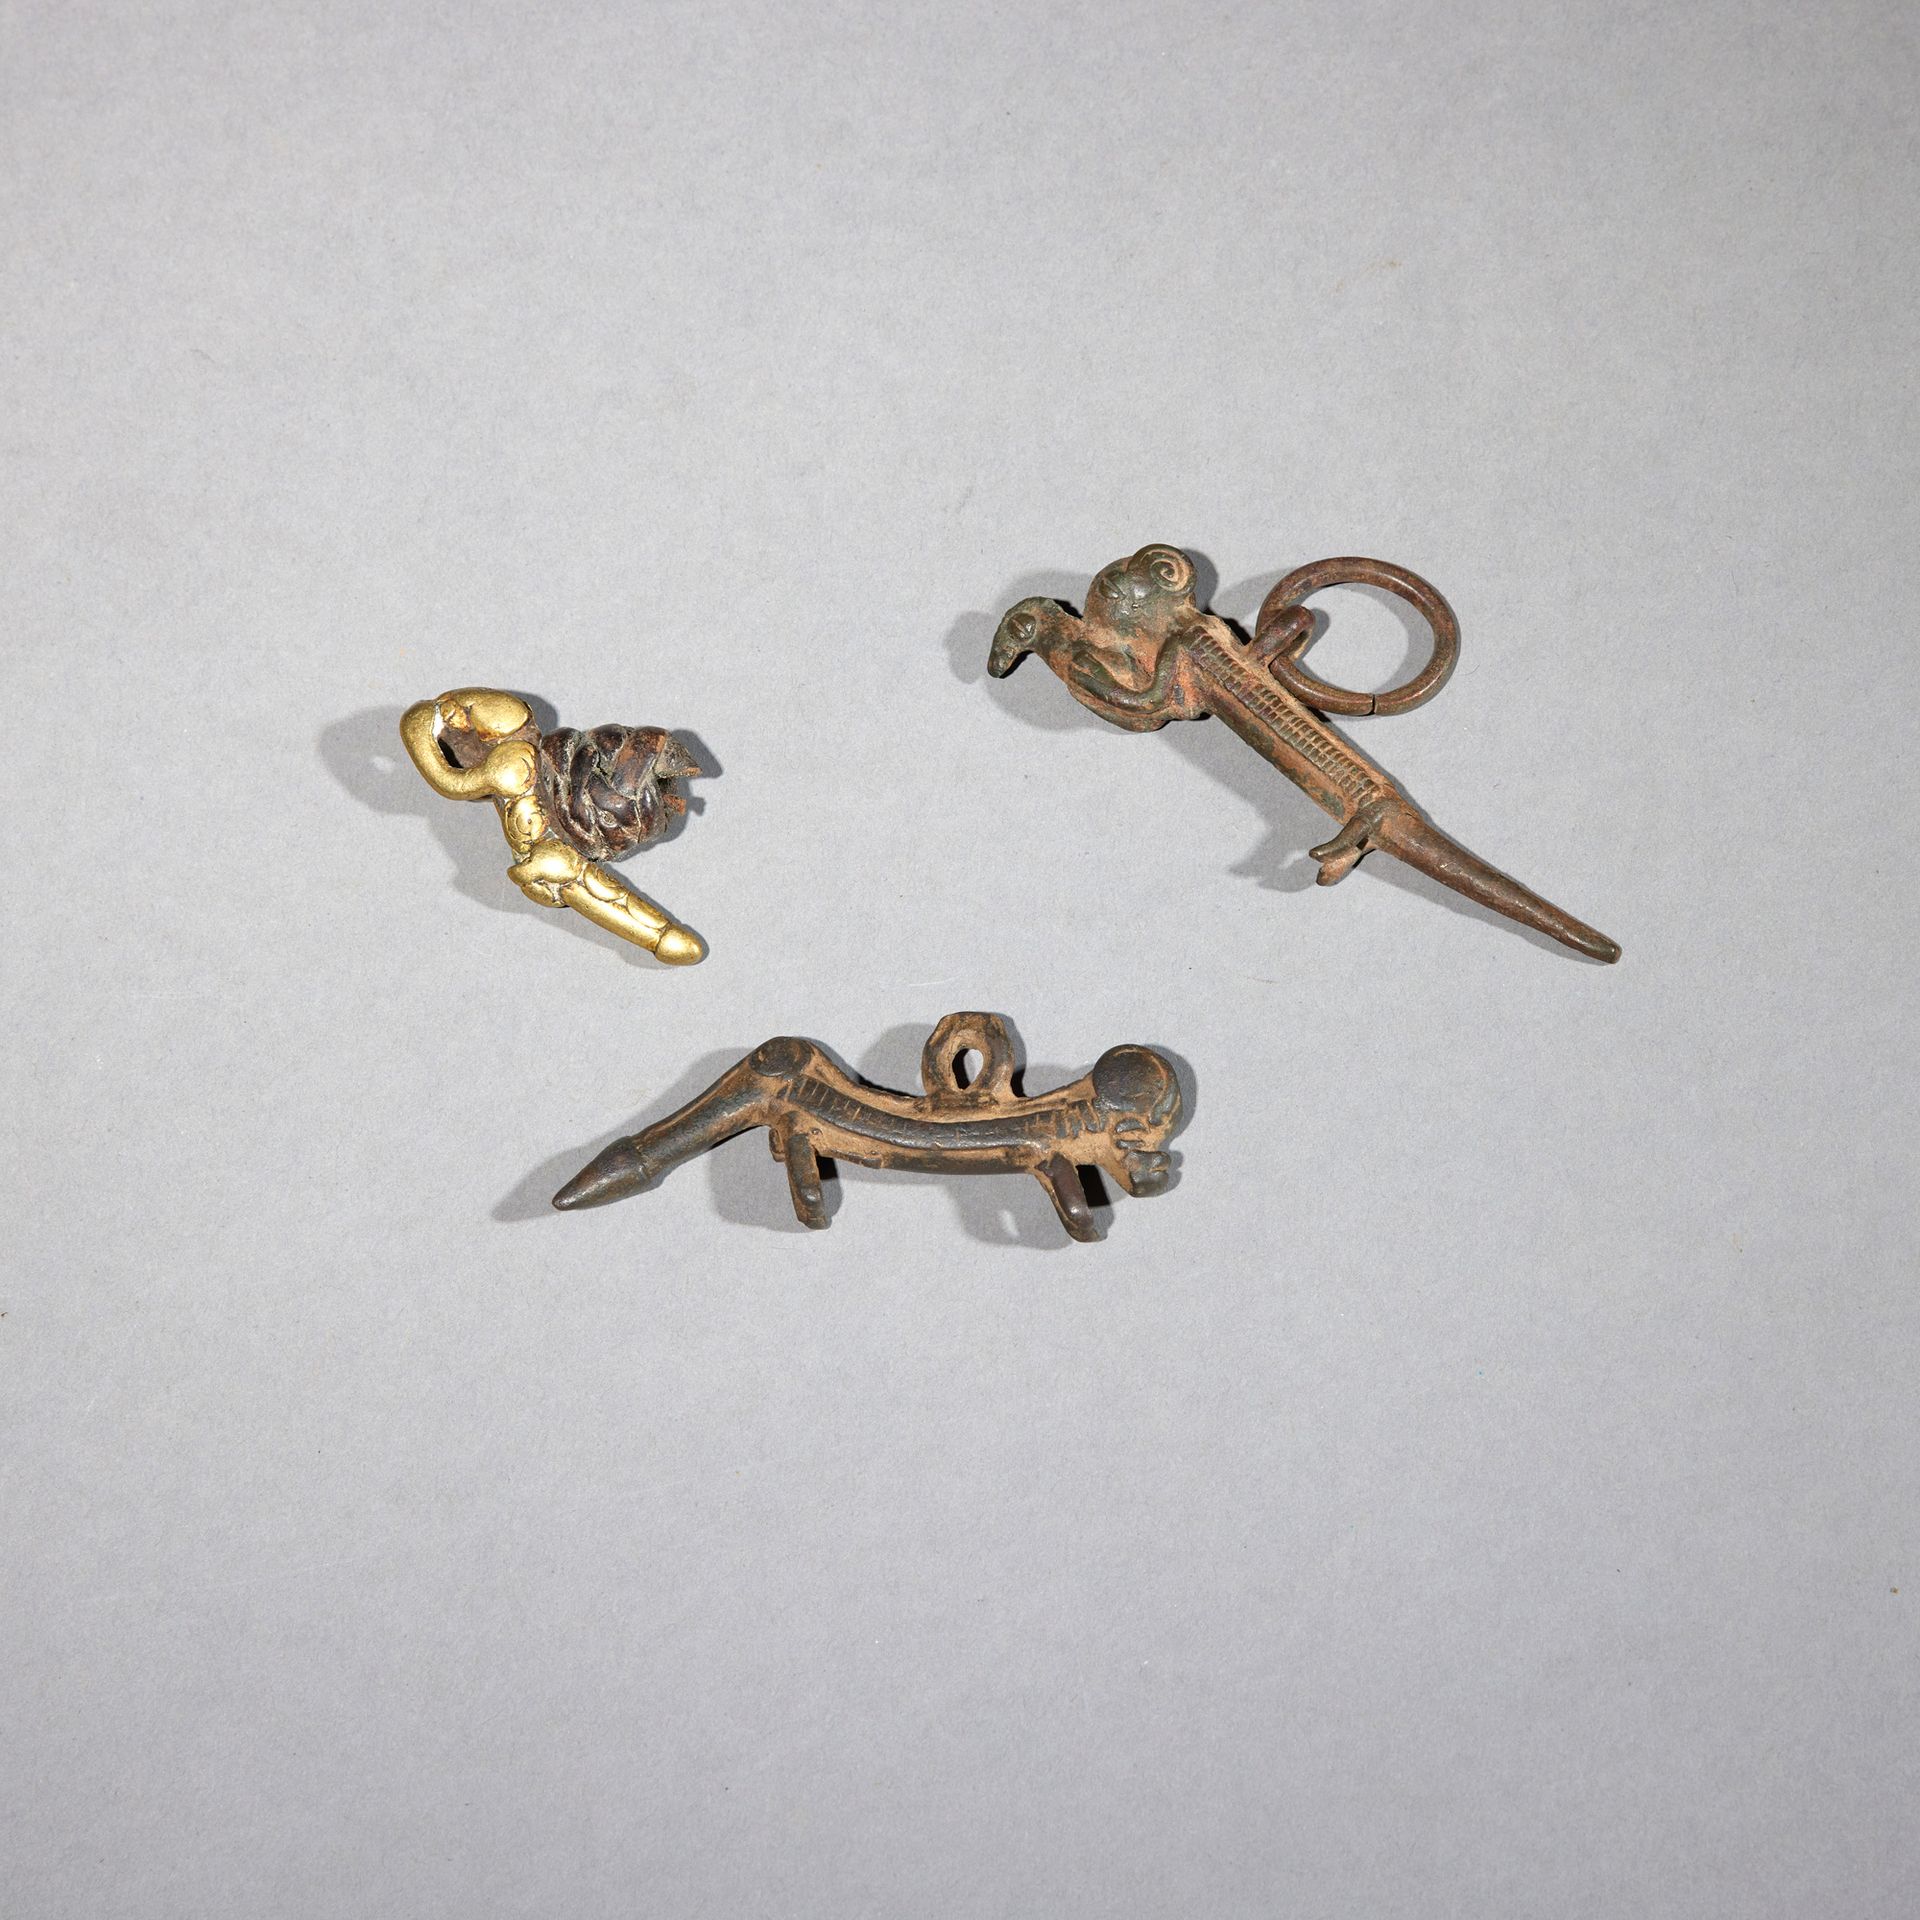 Null 三个吊坠

布基纳法索

铜质

长5.3至9.4厘米



一套三件青铜吊坠，描绘的是黑豹，其中一件前爪夹着一只猎物。